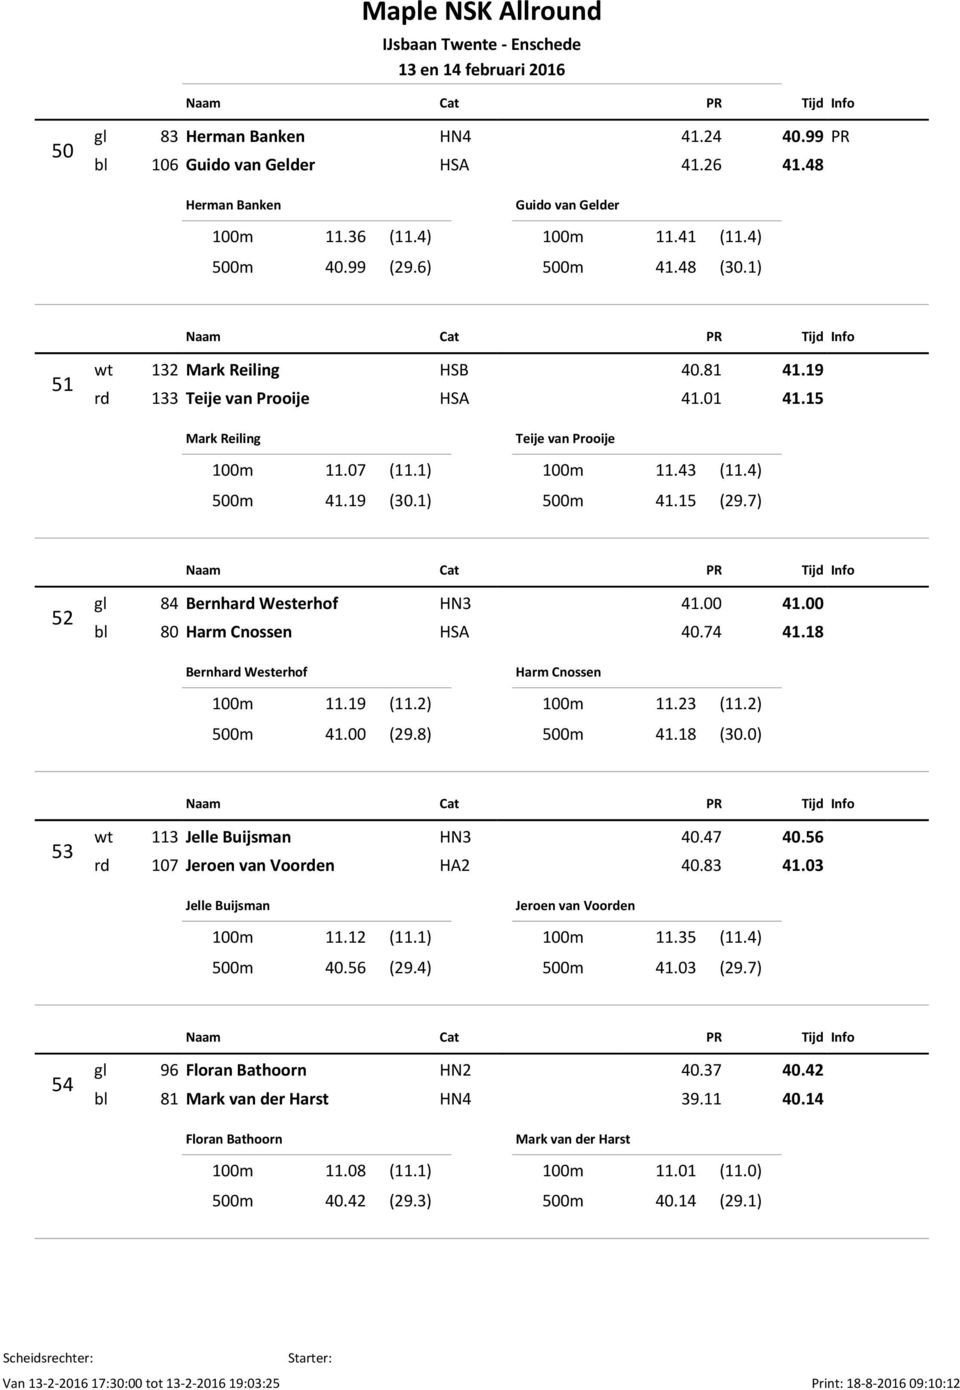 7) 52 gl 84 Bernhard Westerhof HN3 41.00 41.00 bl 80 Harm Cnossen HSA 40.74 41.18 Bernhard Westerhof 100m 11.19 (11.2) 500m 41.00 (29.8) Harm Cnossen 100m 11.23 (11.2) 500m 41.18 (30.